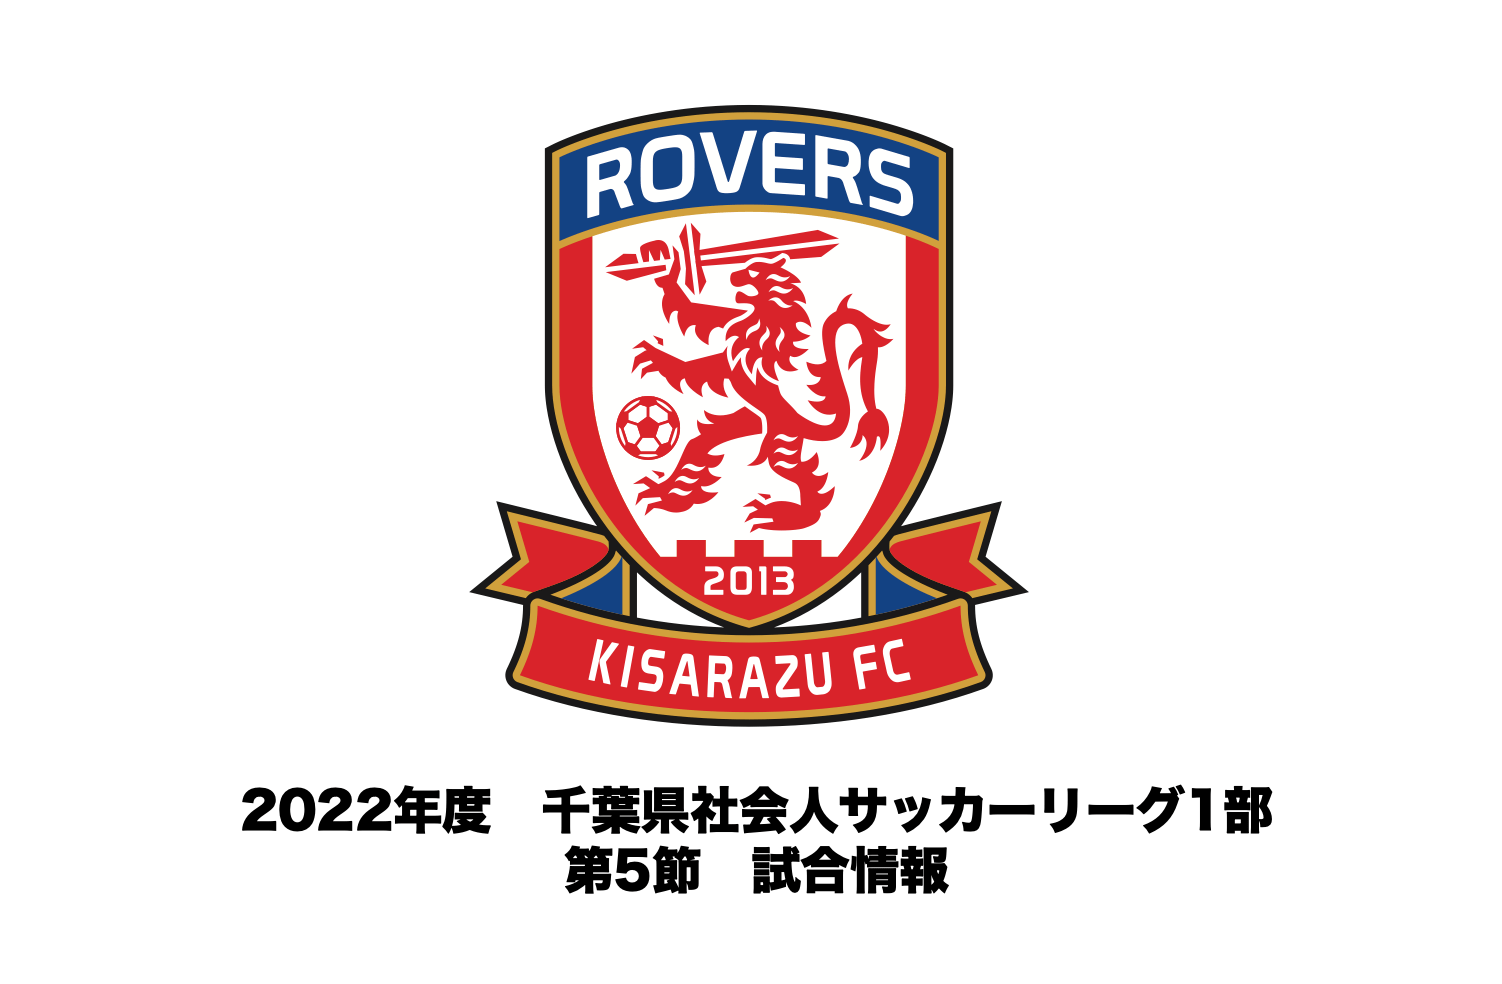 【試合情報】2022年度 千葉県社会人サッカーリーグ1部 第5節について